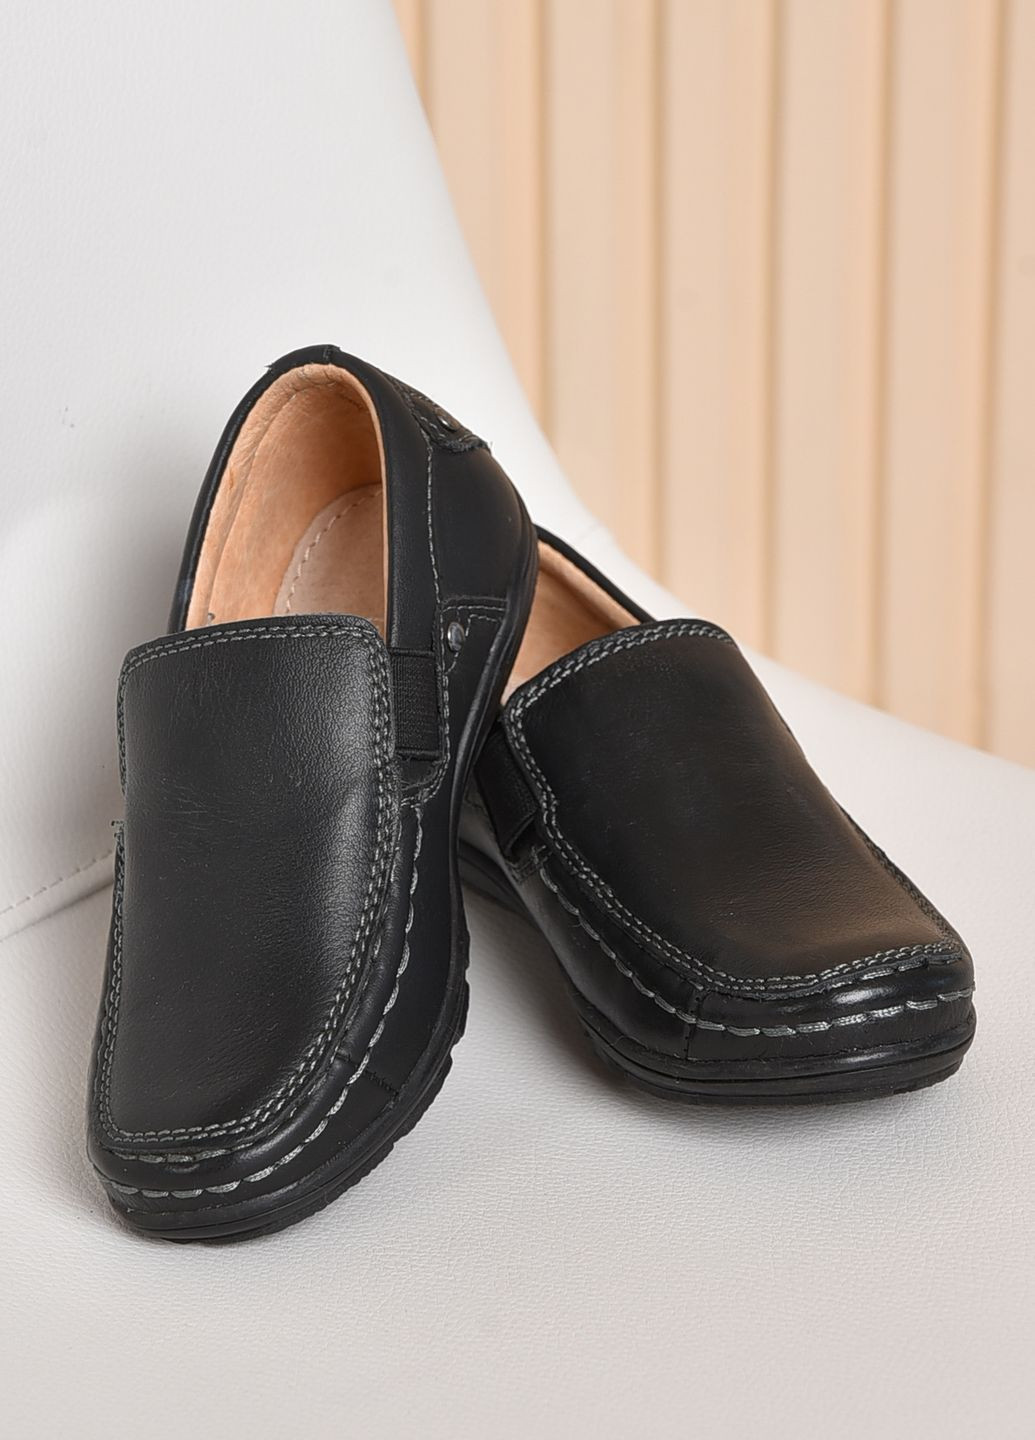 Черные туфли детские для мальчика черного цвета размер 26 без шнурков Let's Shop